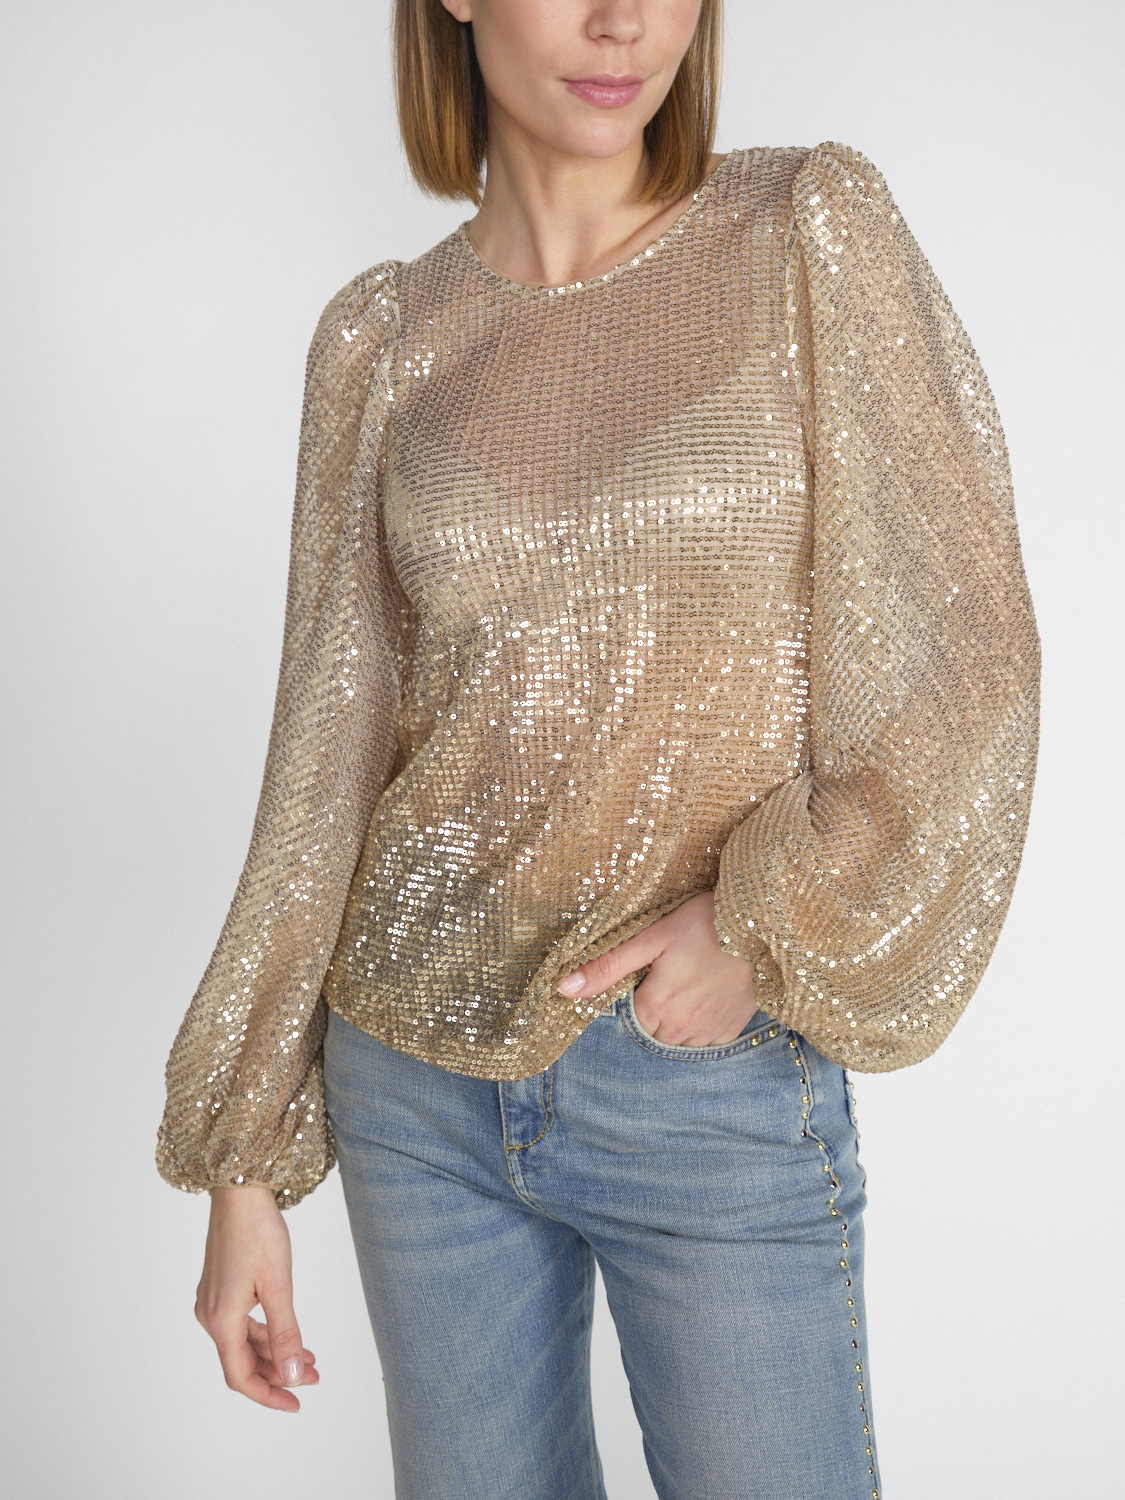 Dorothee Schumacher Shimmering Dreams – Transparente Mesh-Bluse mit Pailletten-Besatz  gold M